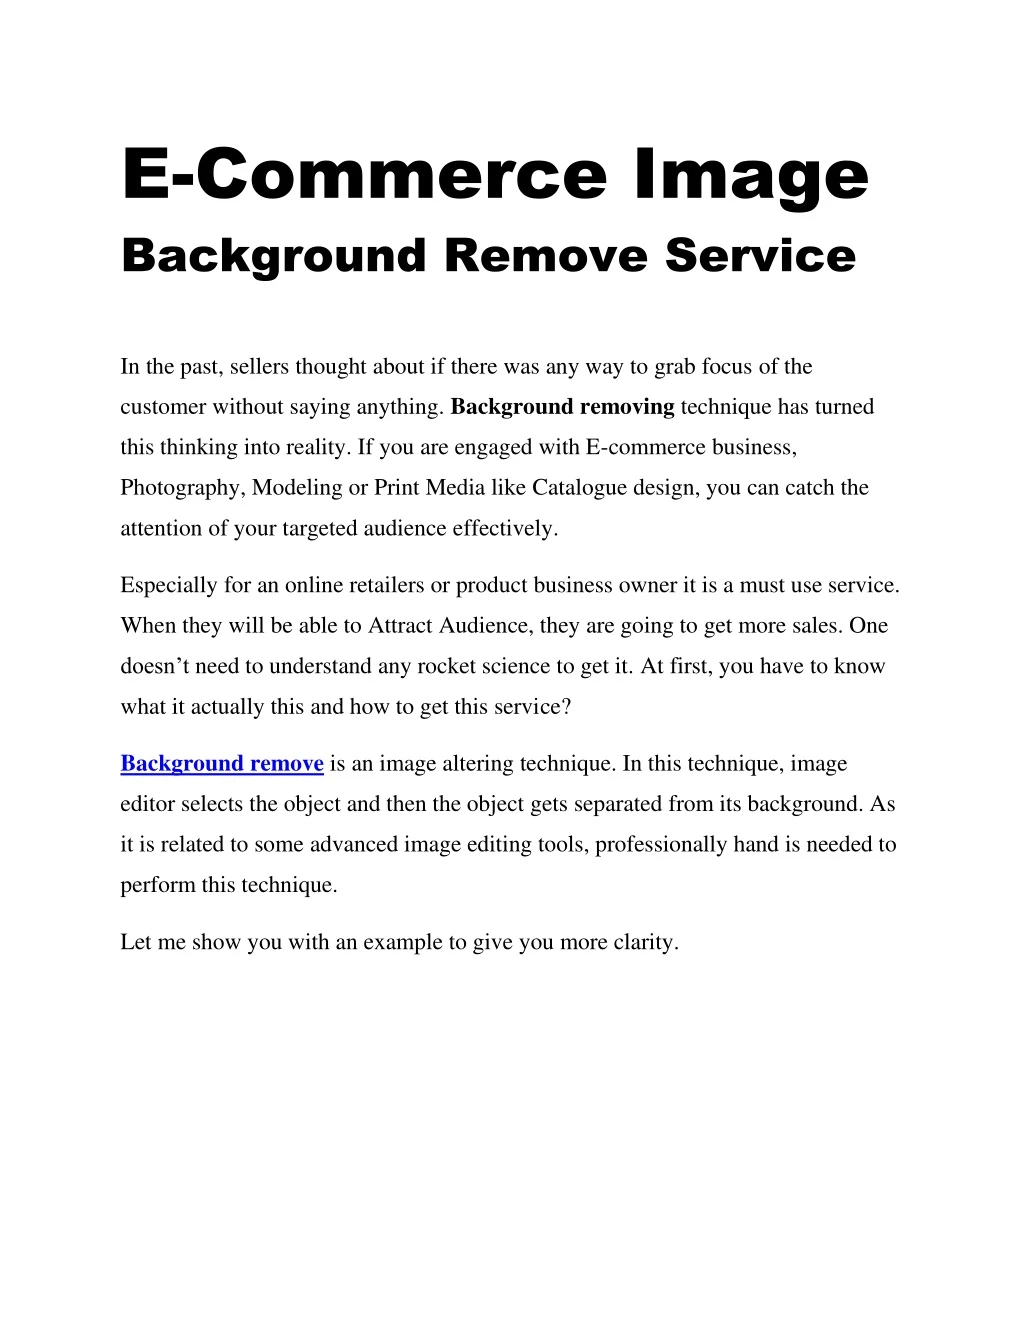 e commerce image background remove service